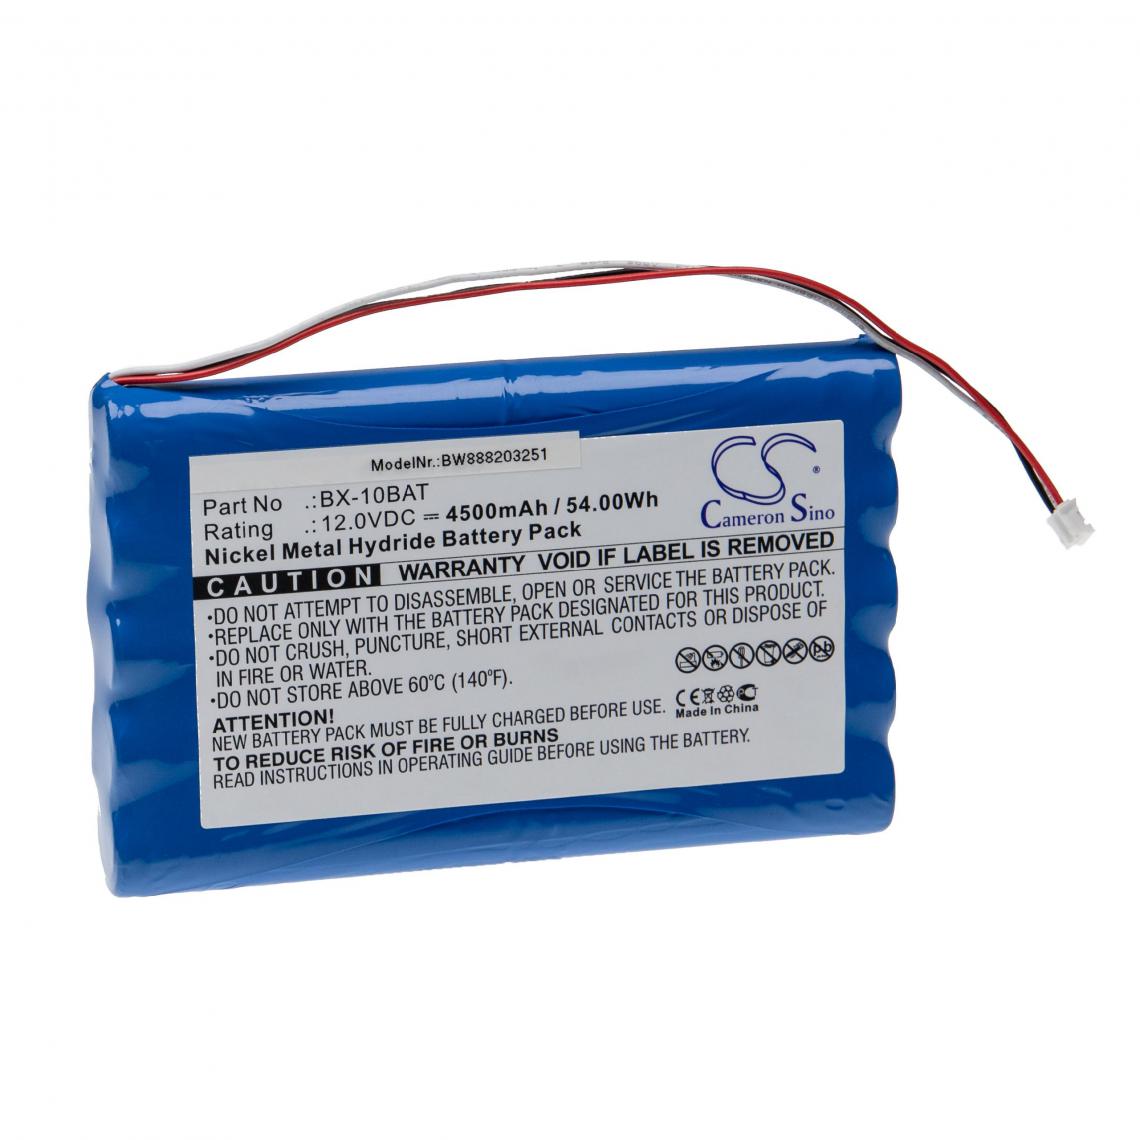 Vhbw - vhbw Batterie remplacement pour Baxter Healthcare BX-10BAT, M1388 pour appareil médical (4500mAh, 12V, NiMH) - Piles spécifiques